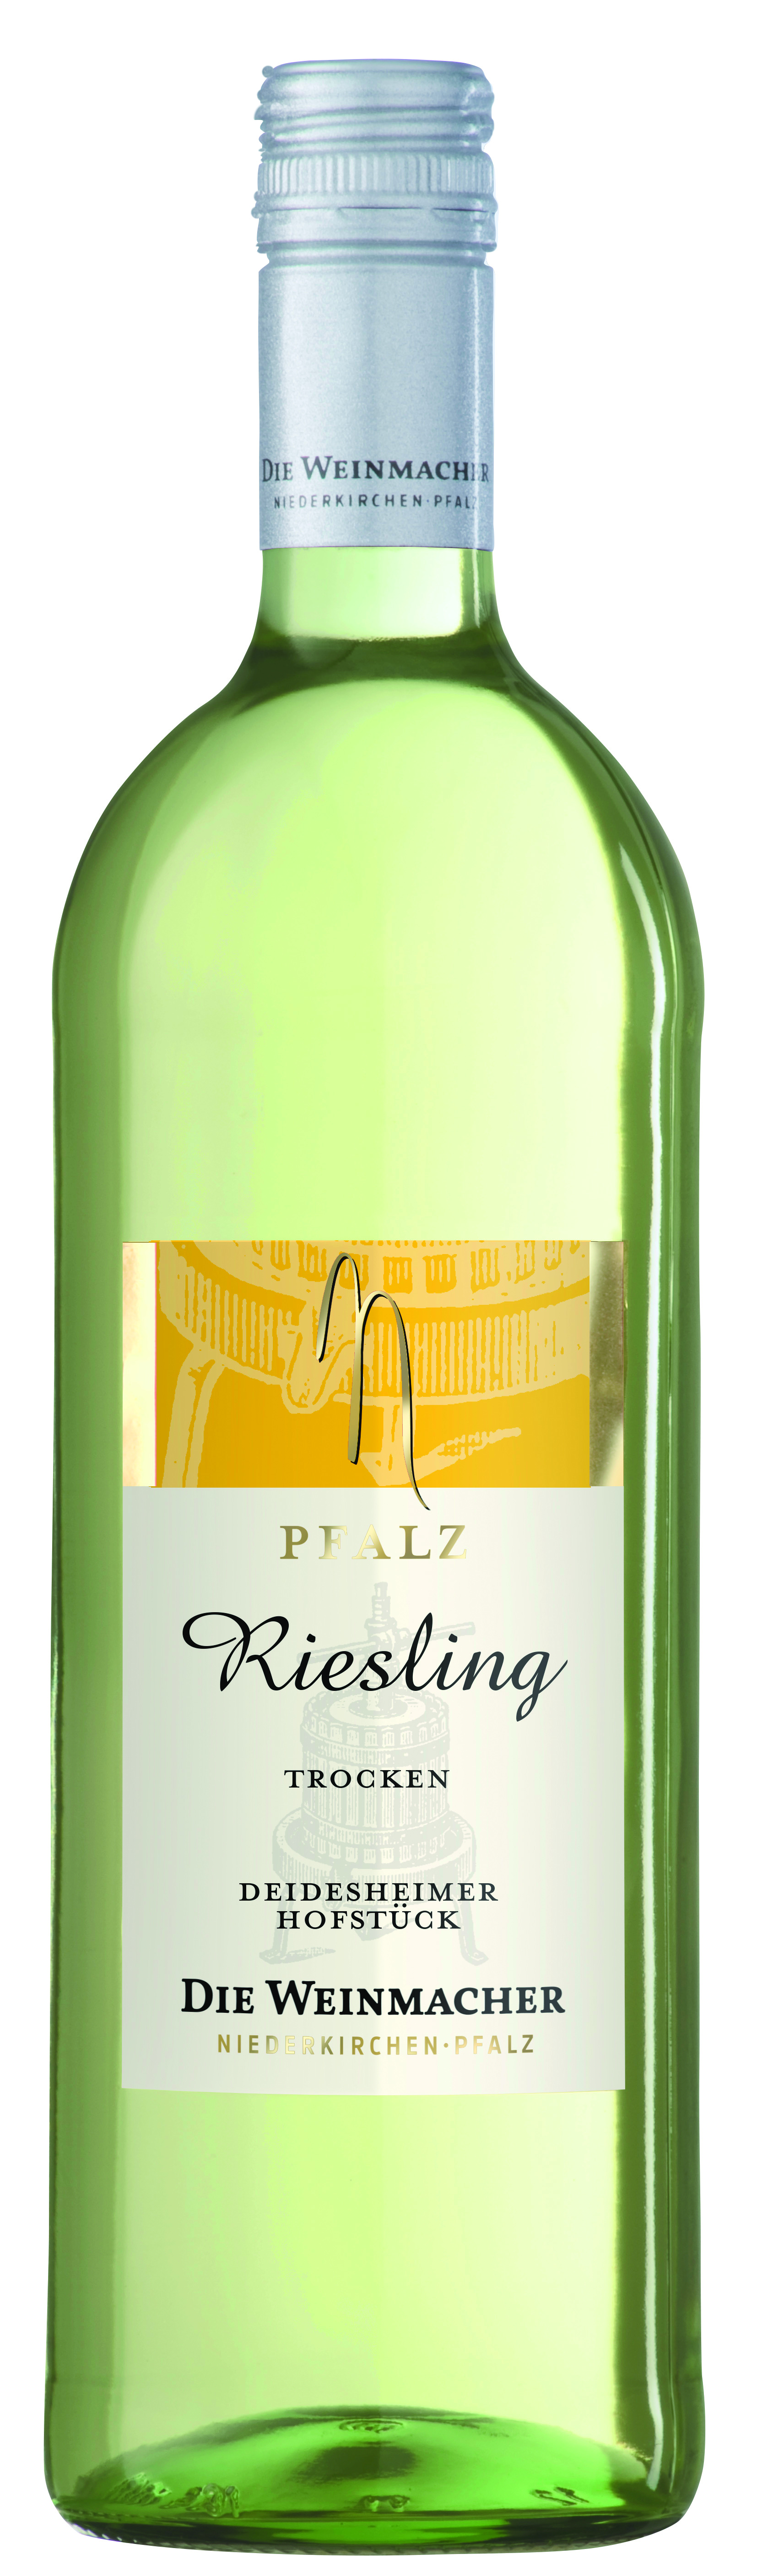 Pfälzer Wein 1,0 | Pfalz Die L Riesling | trocken Weinmacher ▻ Deidesheimer Hofstück